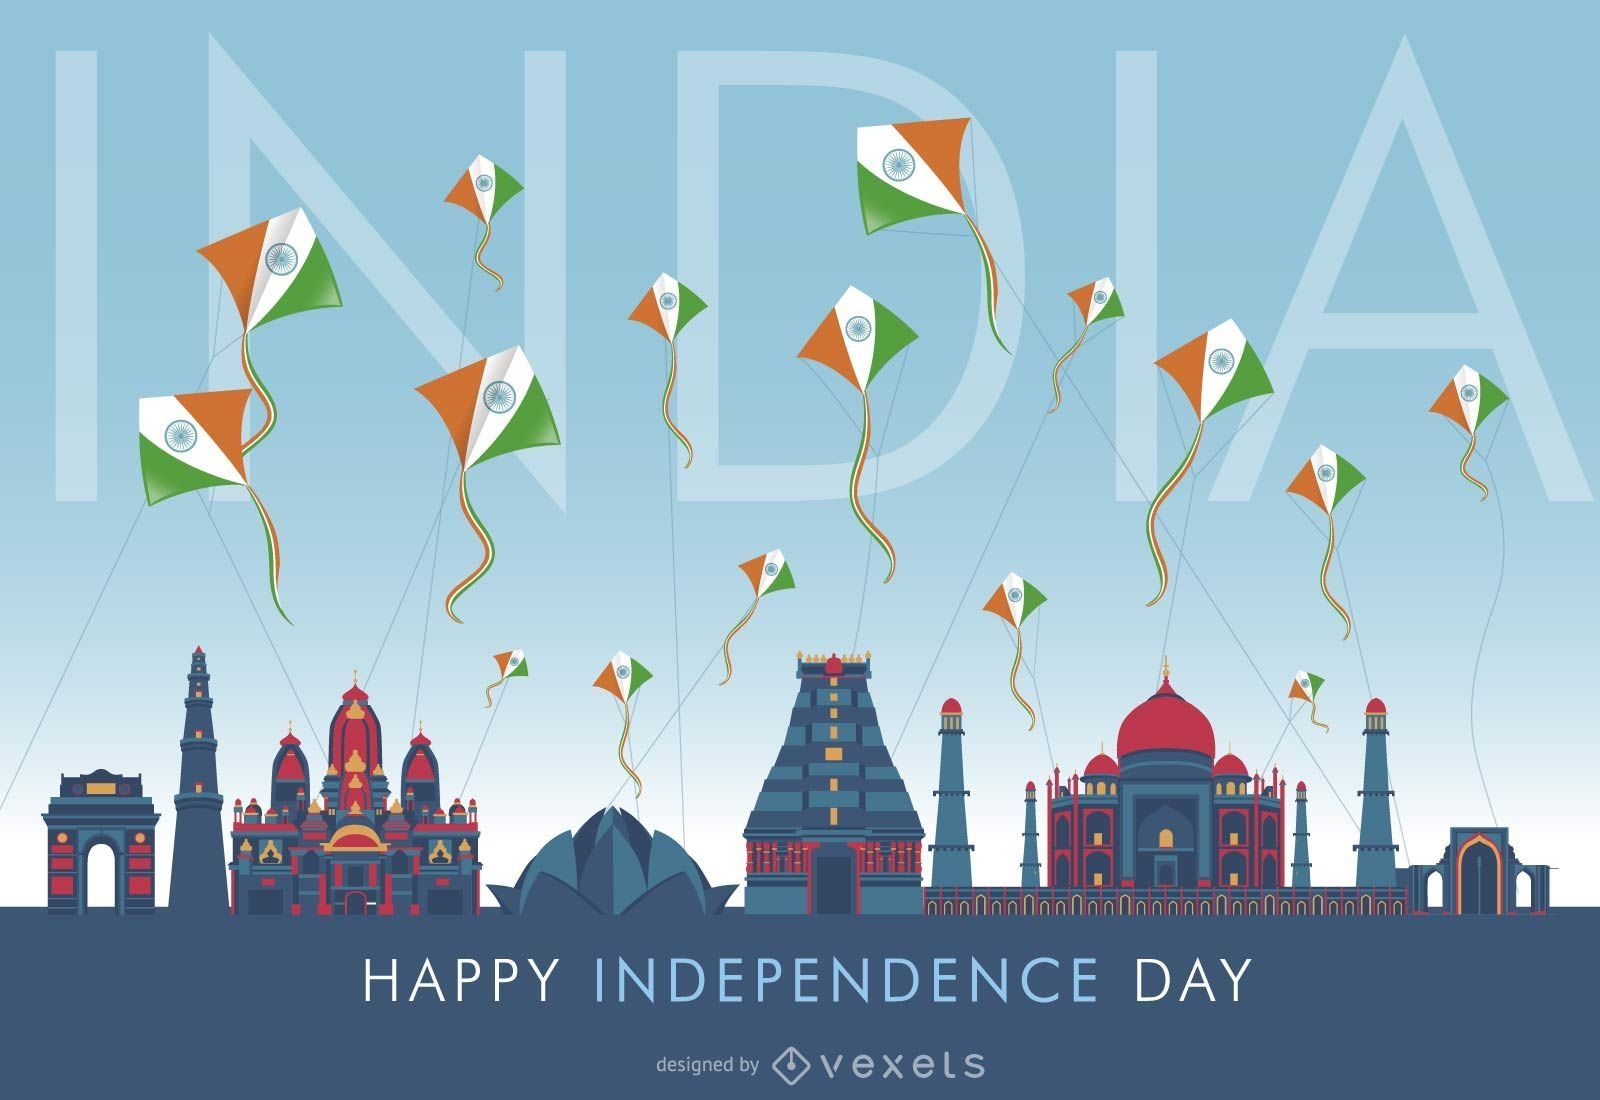 Diseño del horizonte del día de la independencia de la India